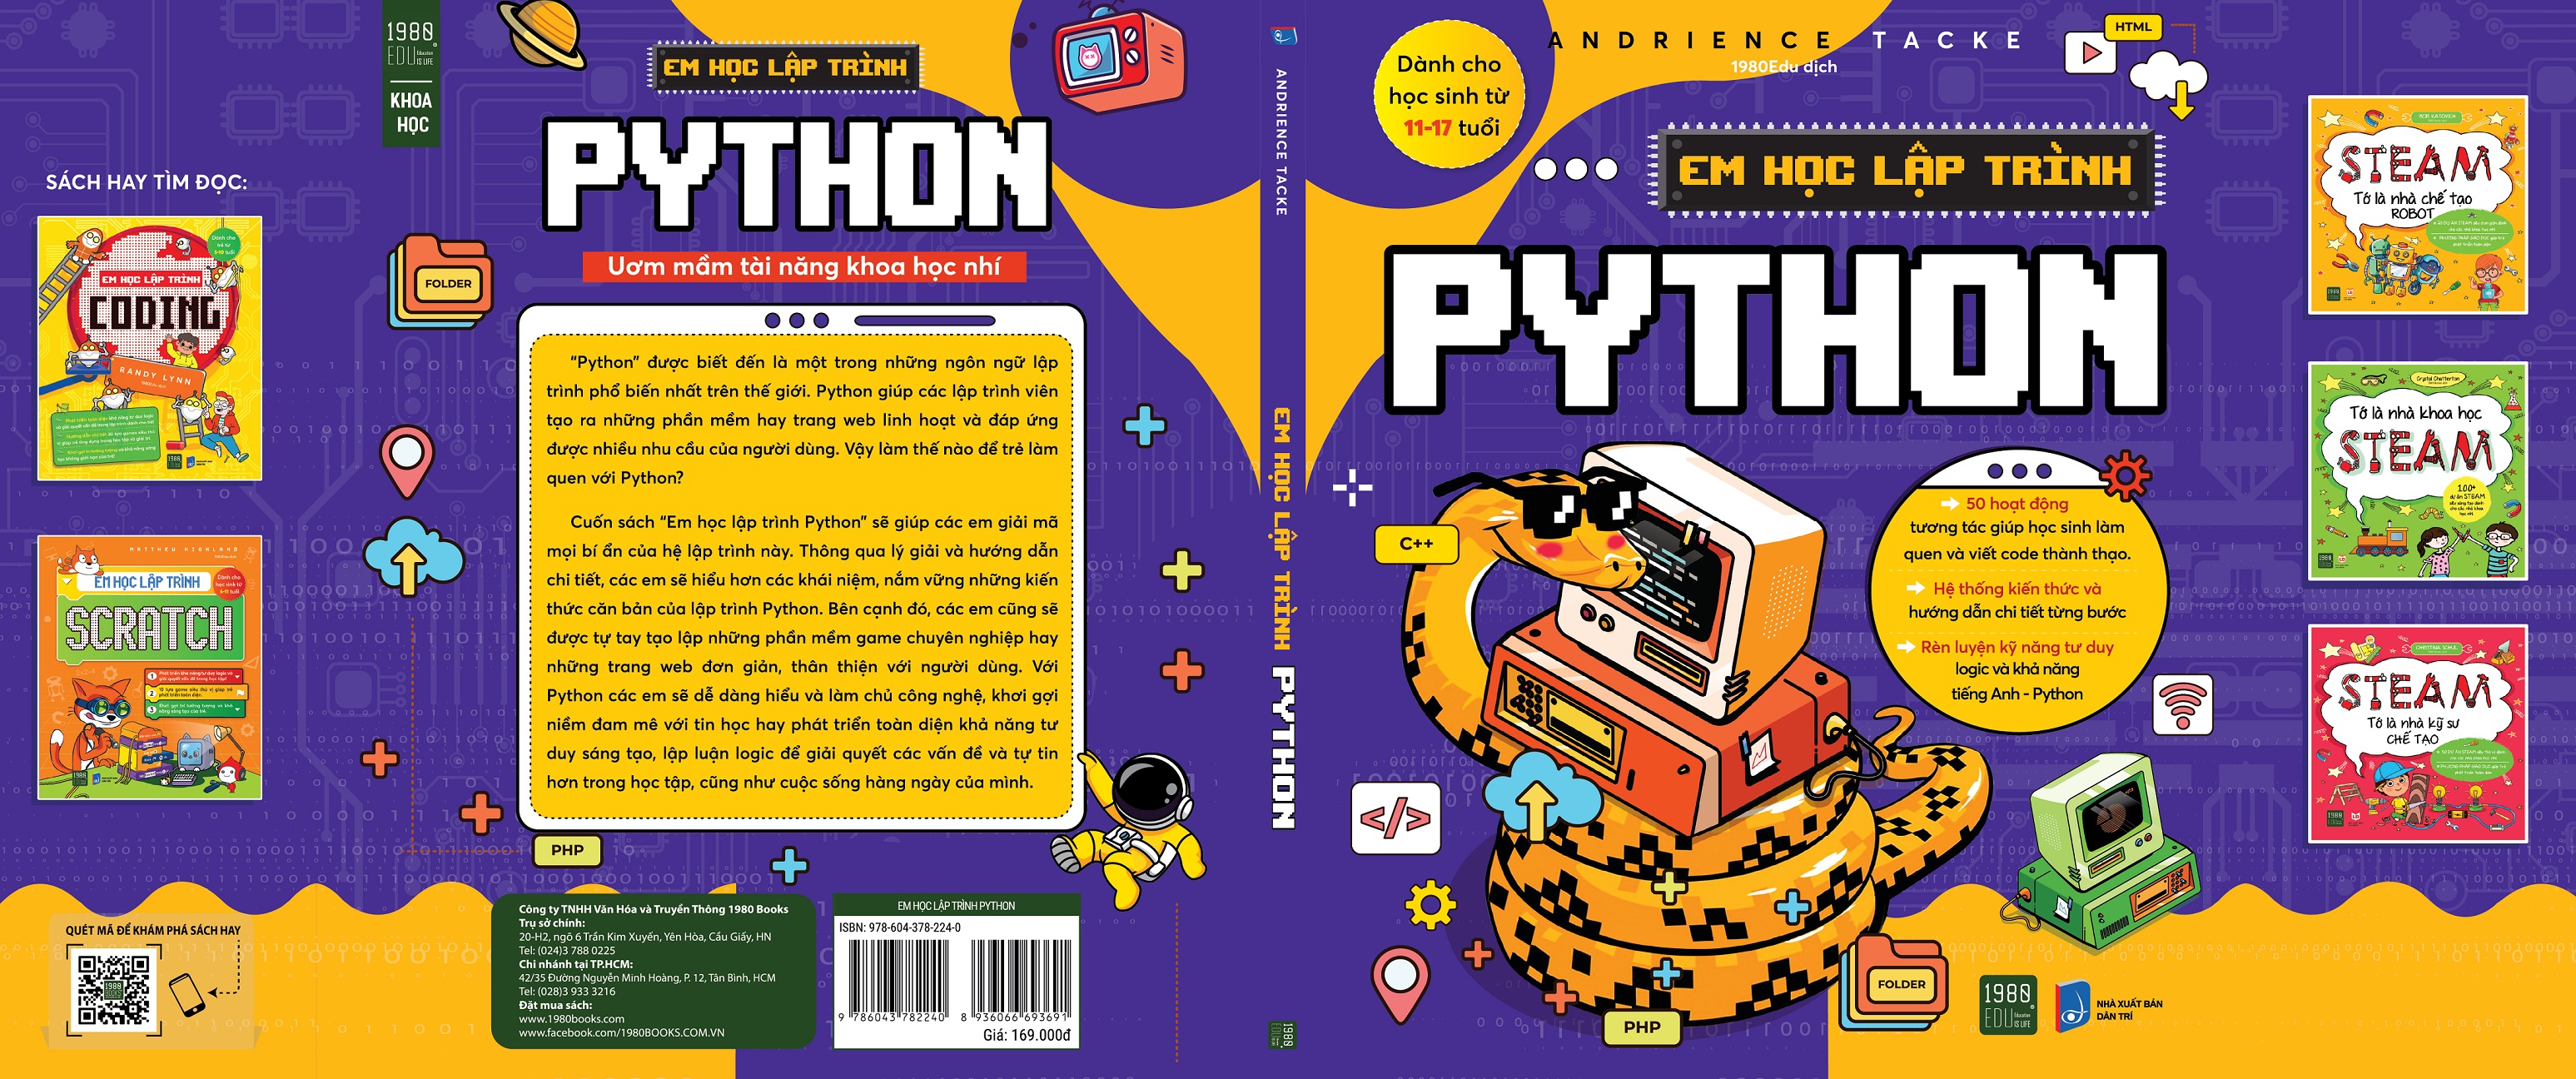 Em học lập trình Python - Andrience Tacke